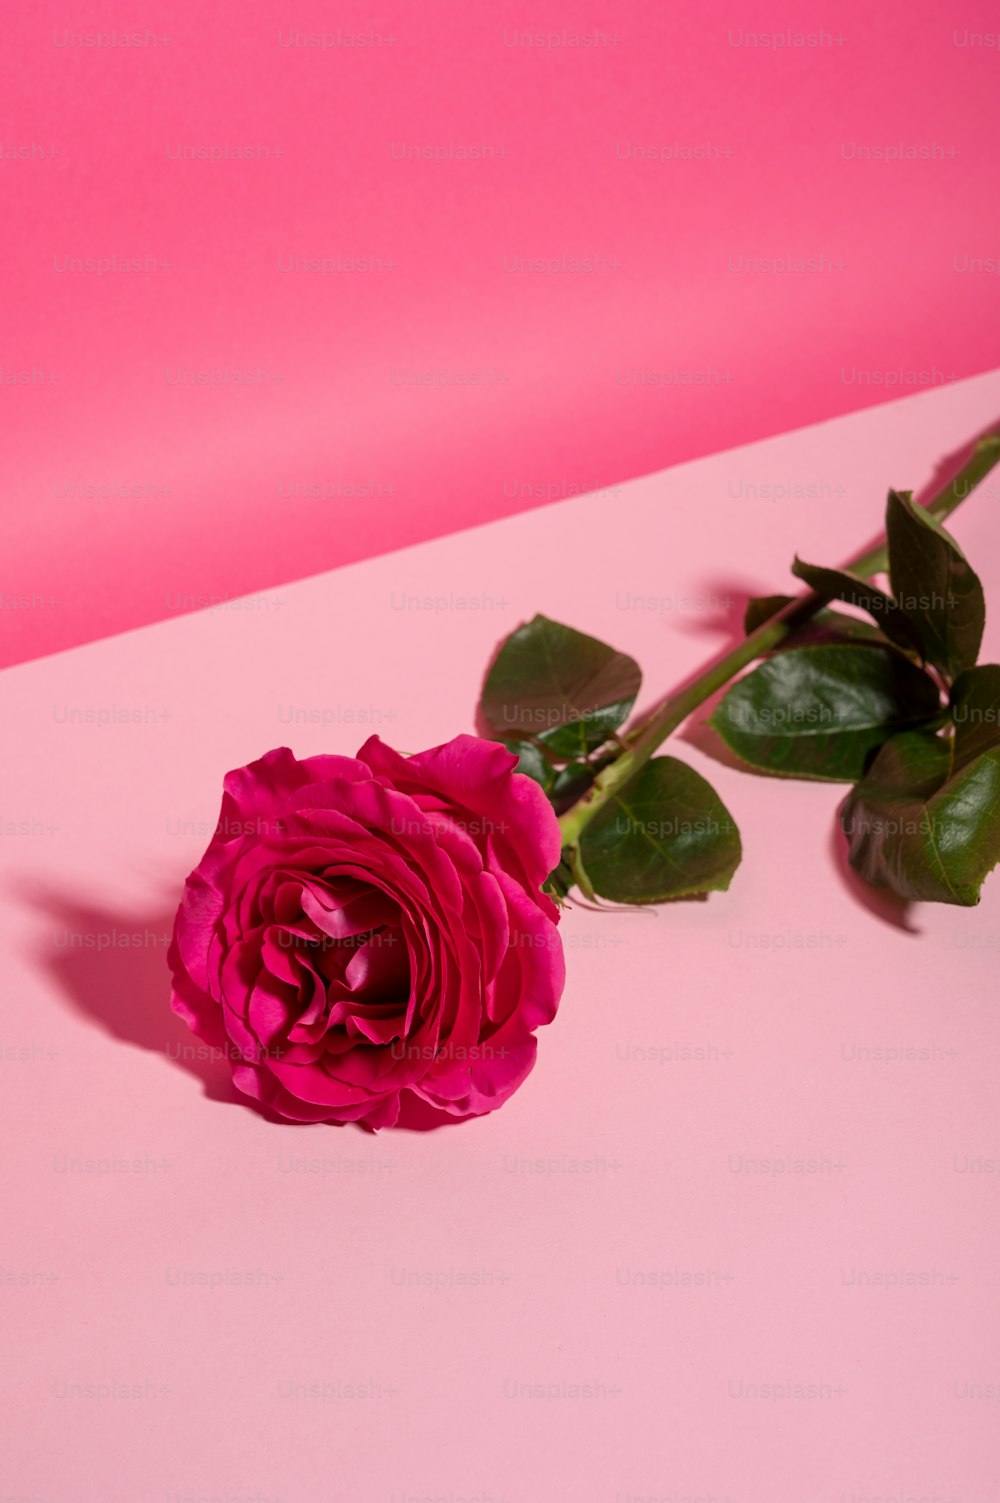 Hồng sen tượng trưng cho tình yêu và sự đồng cảm. Chúng tôi đã chọn lọc những bức ảnh hoa hồng nhỏ xinh đầy màu sắc và ấn tượng để thêm sắc màu cho ngày của bạn. Hãy cùng chiêm ngưỡng chúng ngay!